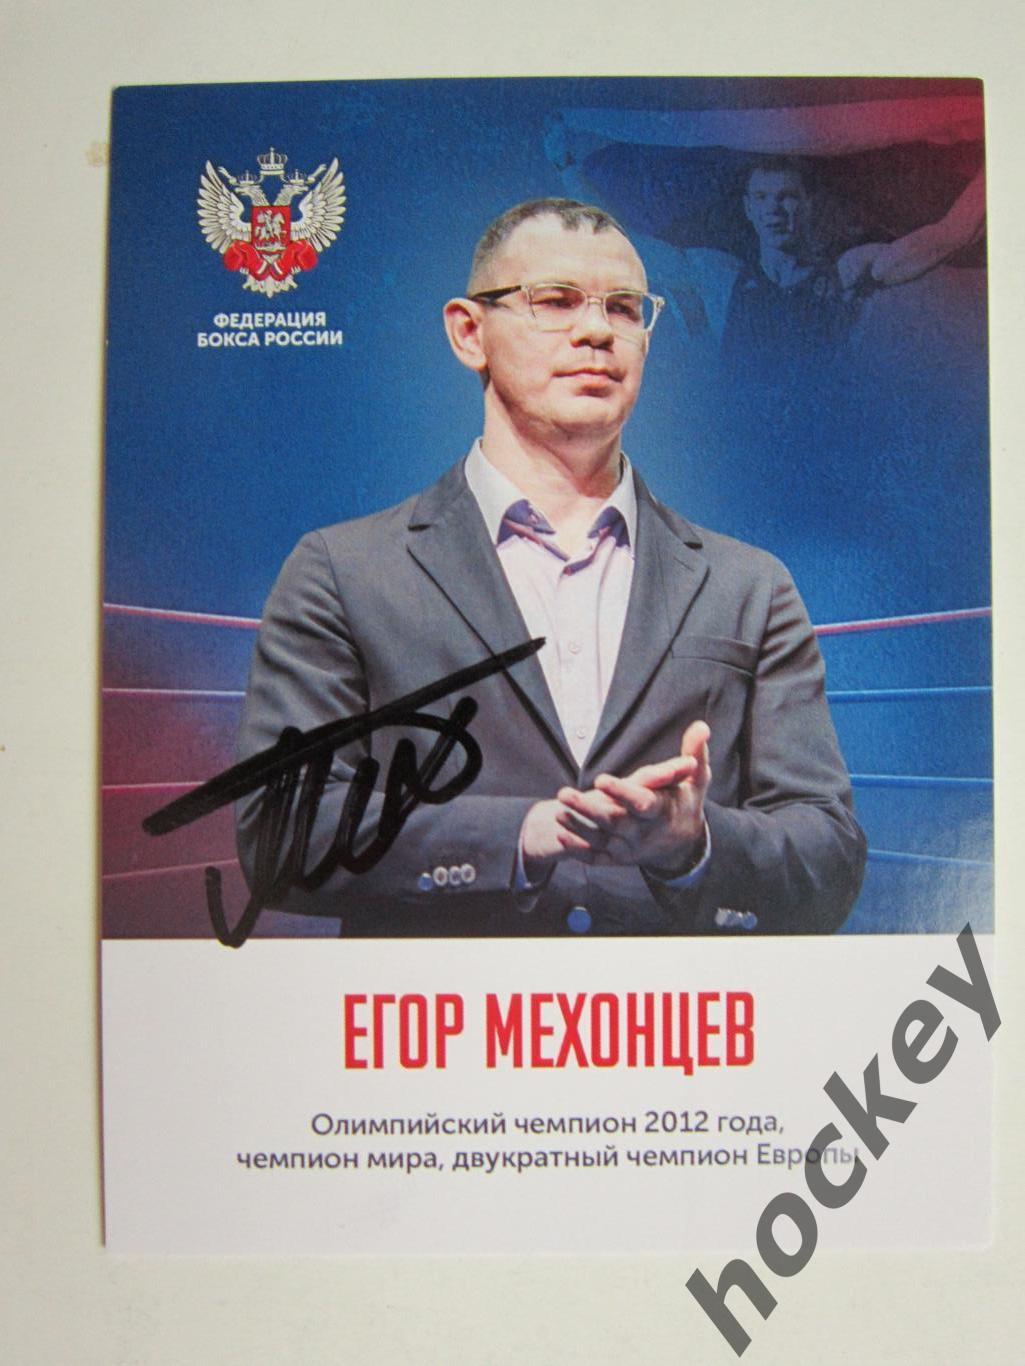 Егор Мехонцев (бокс). Фото-карточка с автографом.